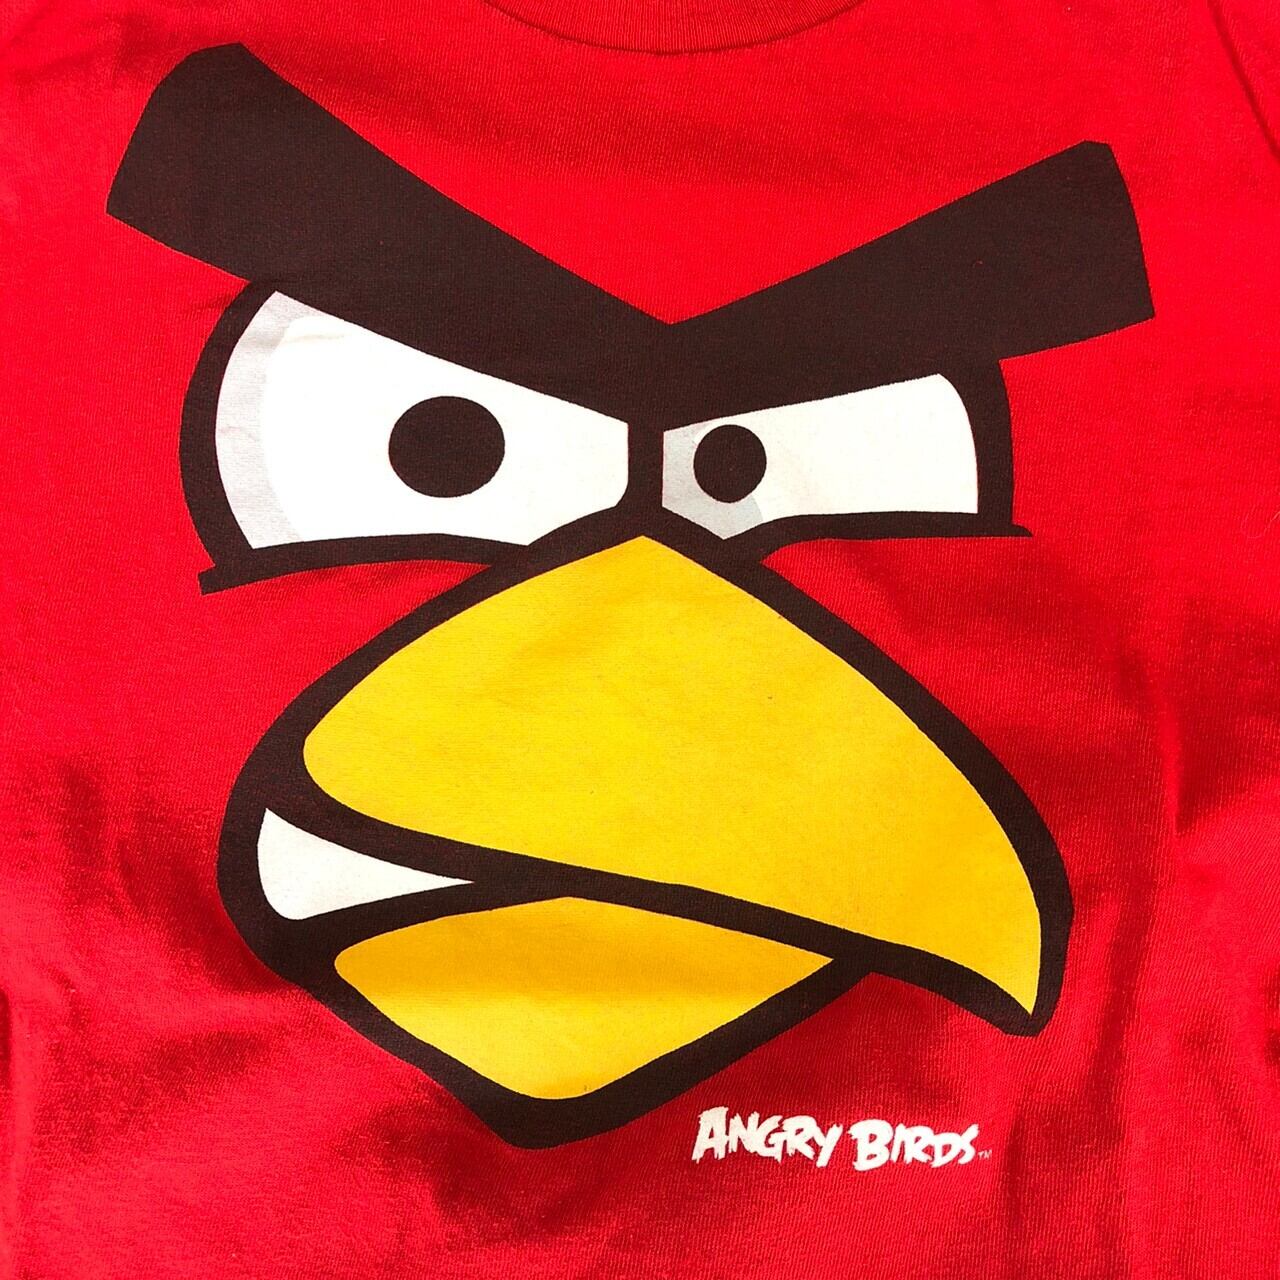 アングリーバード フェイス Usedtee レッド Angry Birds Usedtshirt Red The Puppez E Shop ザ パペッツ松本 Webショップ